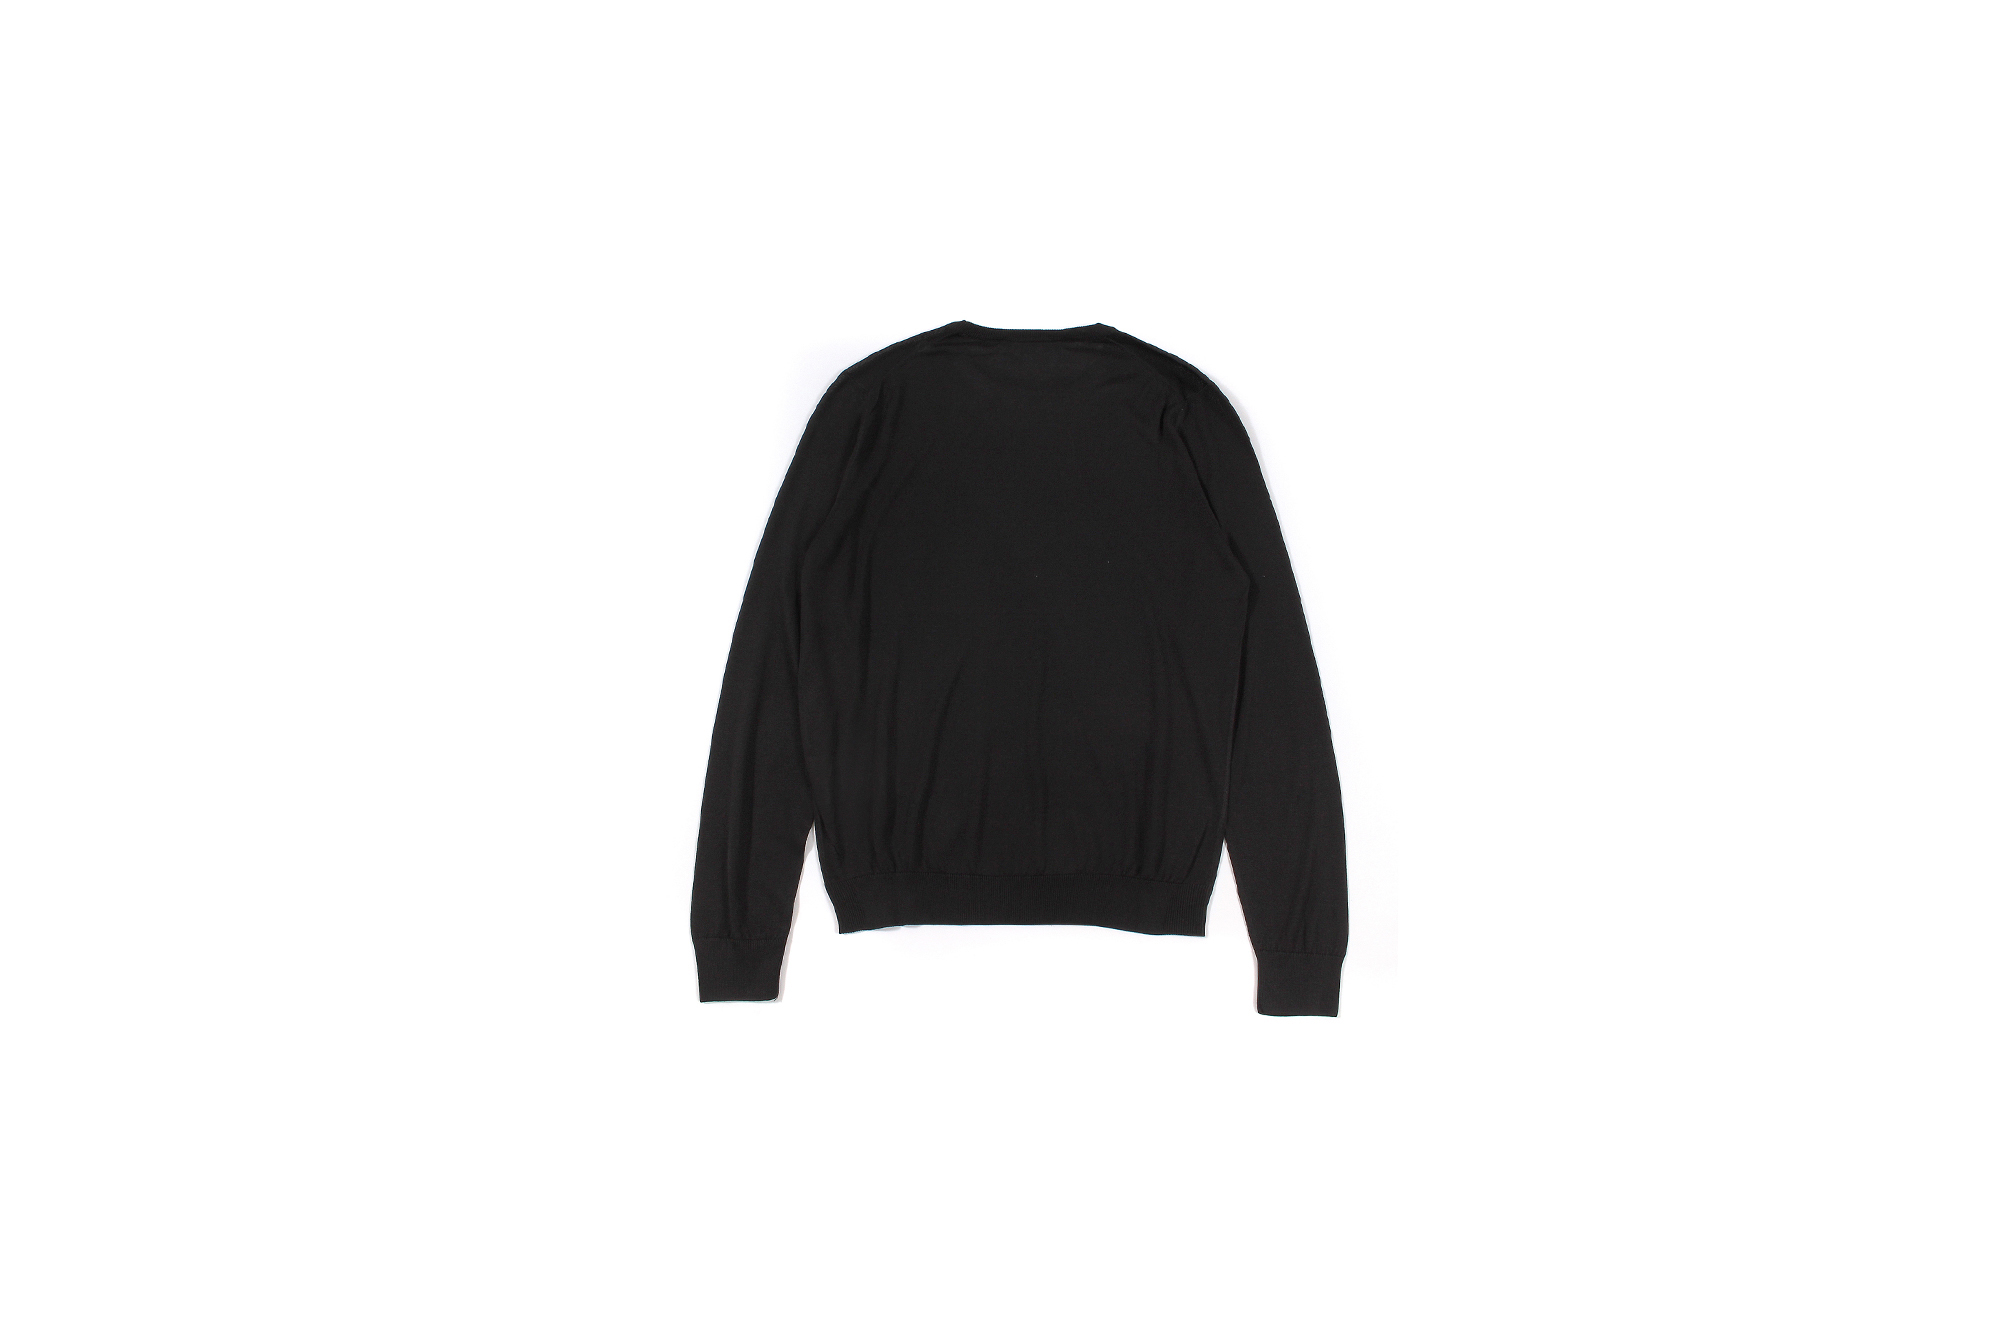 Gran Sasso (グランサッソ) Silk Knit Crew Neck Sweater (シルク ニット クルーネック セーター) SETA (シルク 100%) シルクニット セーター BLACK (ブラック・099) made in italy (イタリア製) 2022秋冬 愛知 名古屋 Alto e Diritto altoediritto アルトエデリット